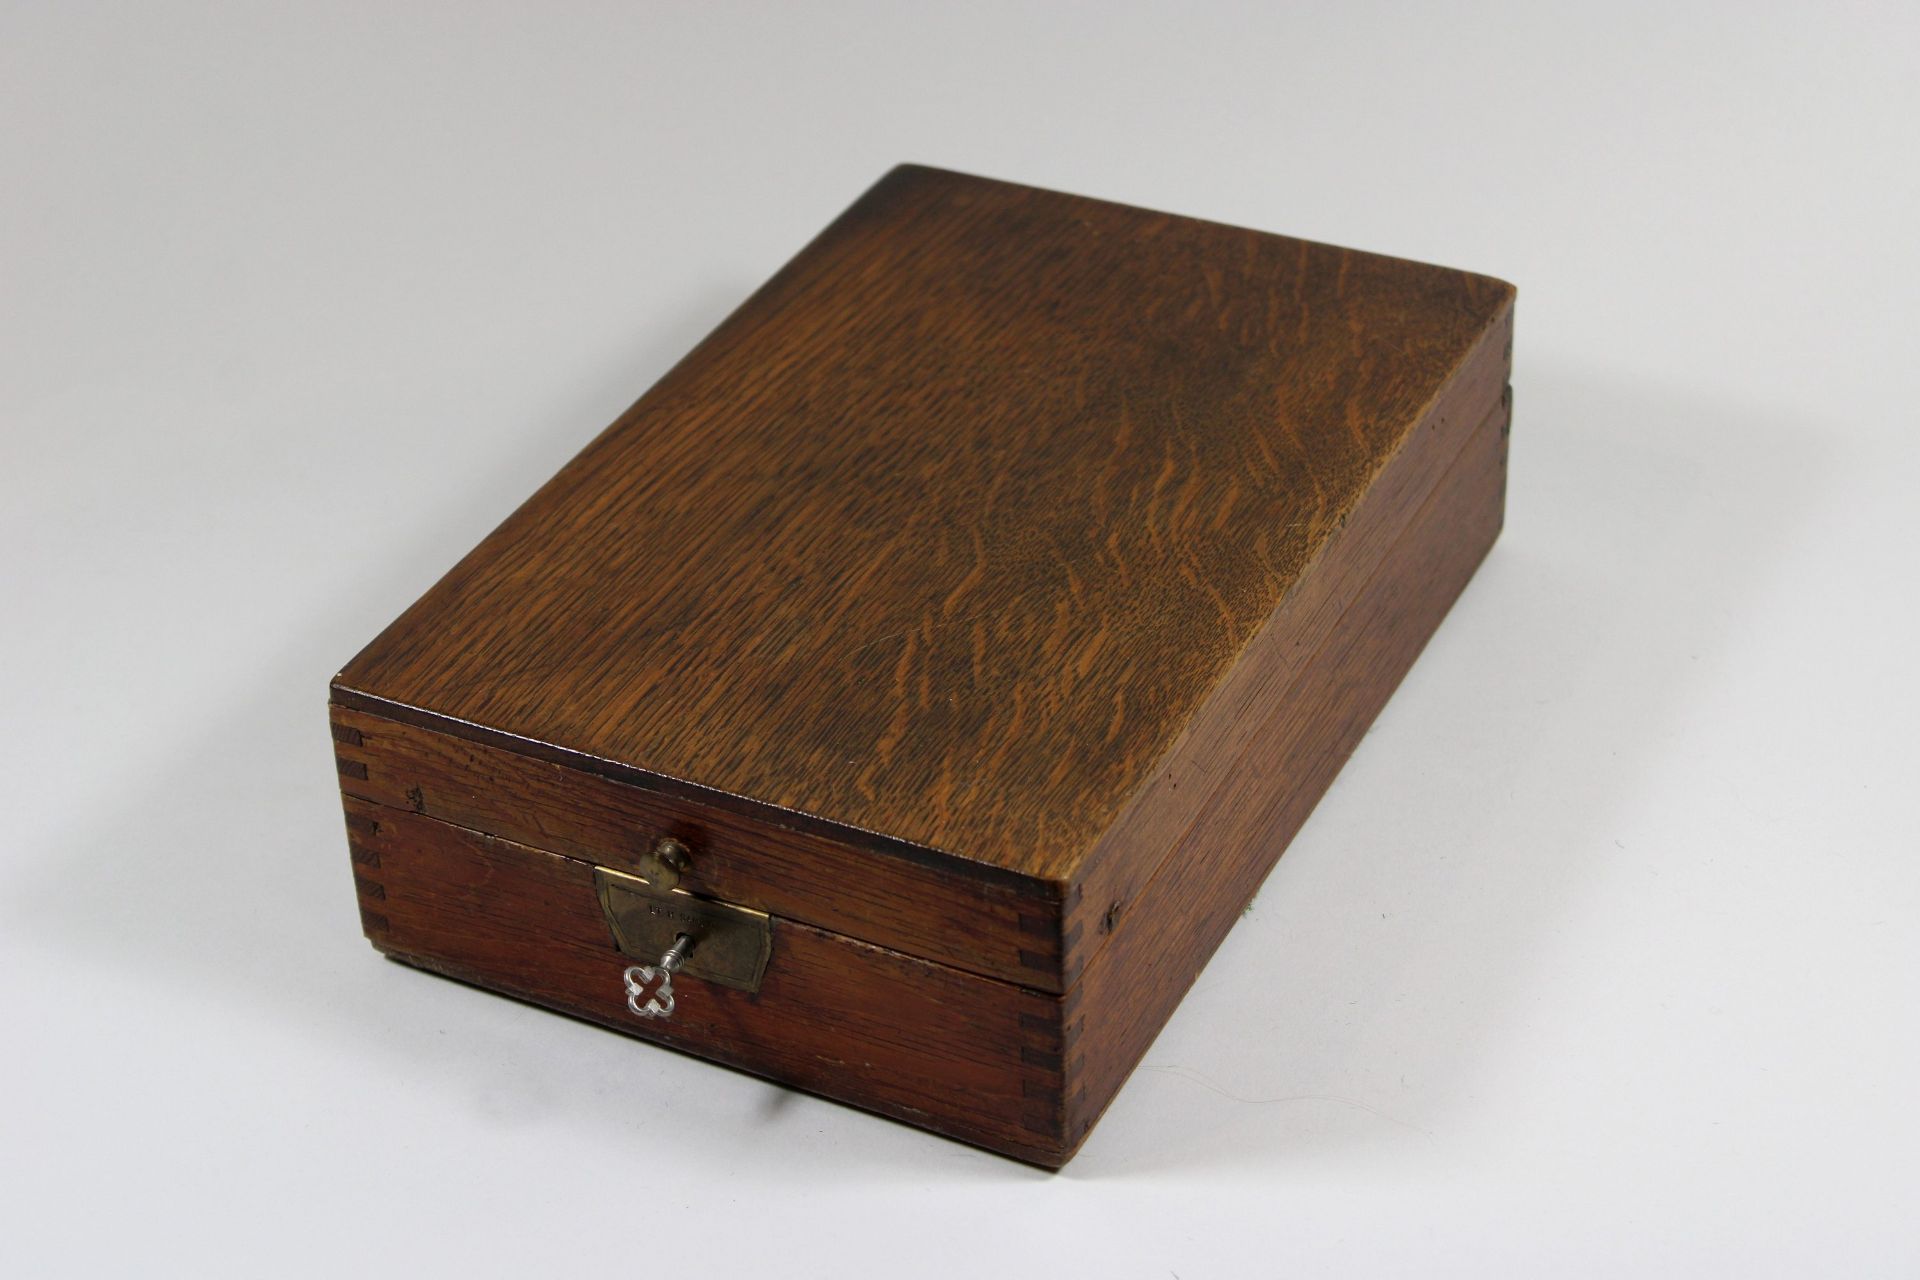 Rasierbox mit Reiseset, Box aus Holz mit ausklappbaren Spiegel - Image 2 of 3